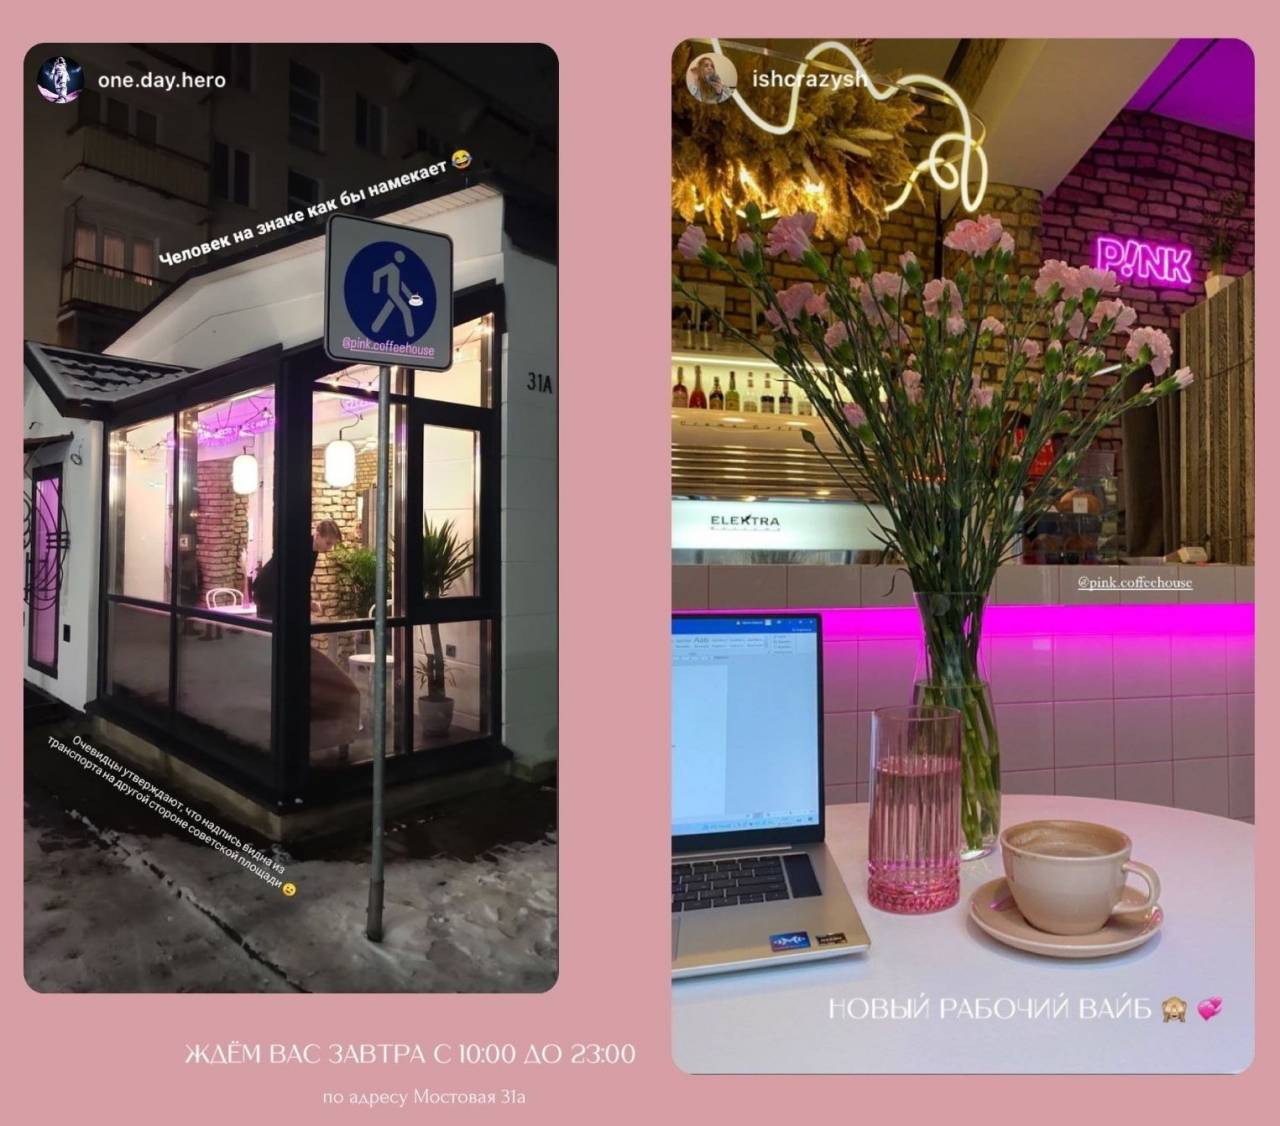 В оформлении много элементов розового цвета — цветы, плакаты, вазы: в центре Гродно открылась новая кофейня P!nk